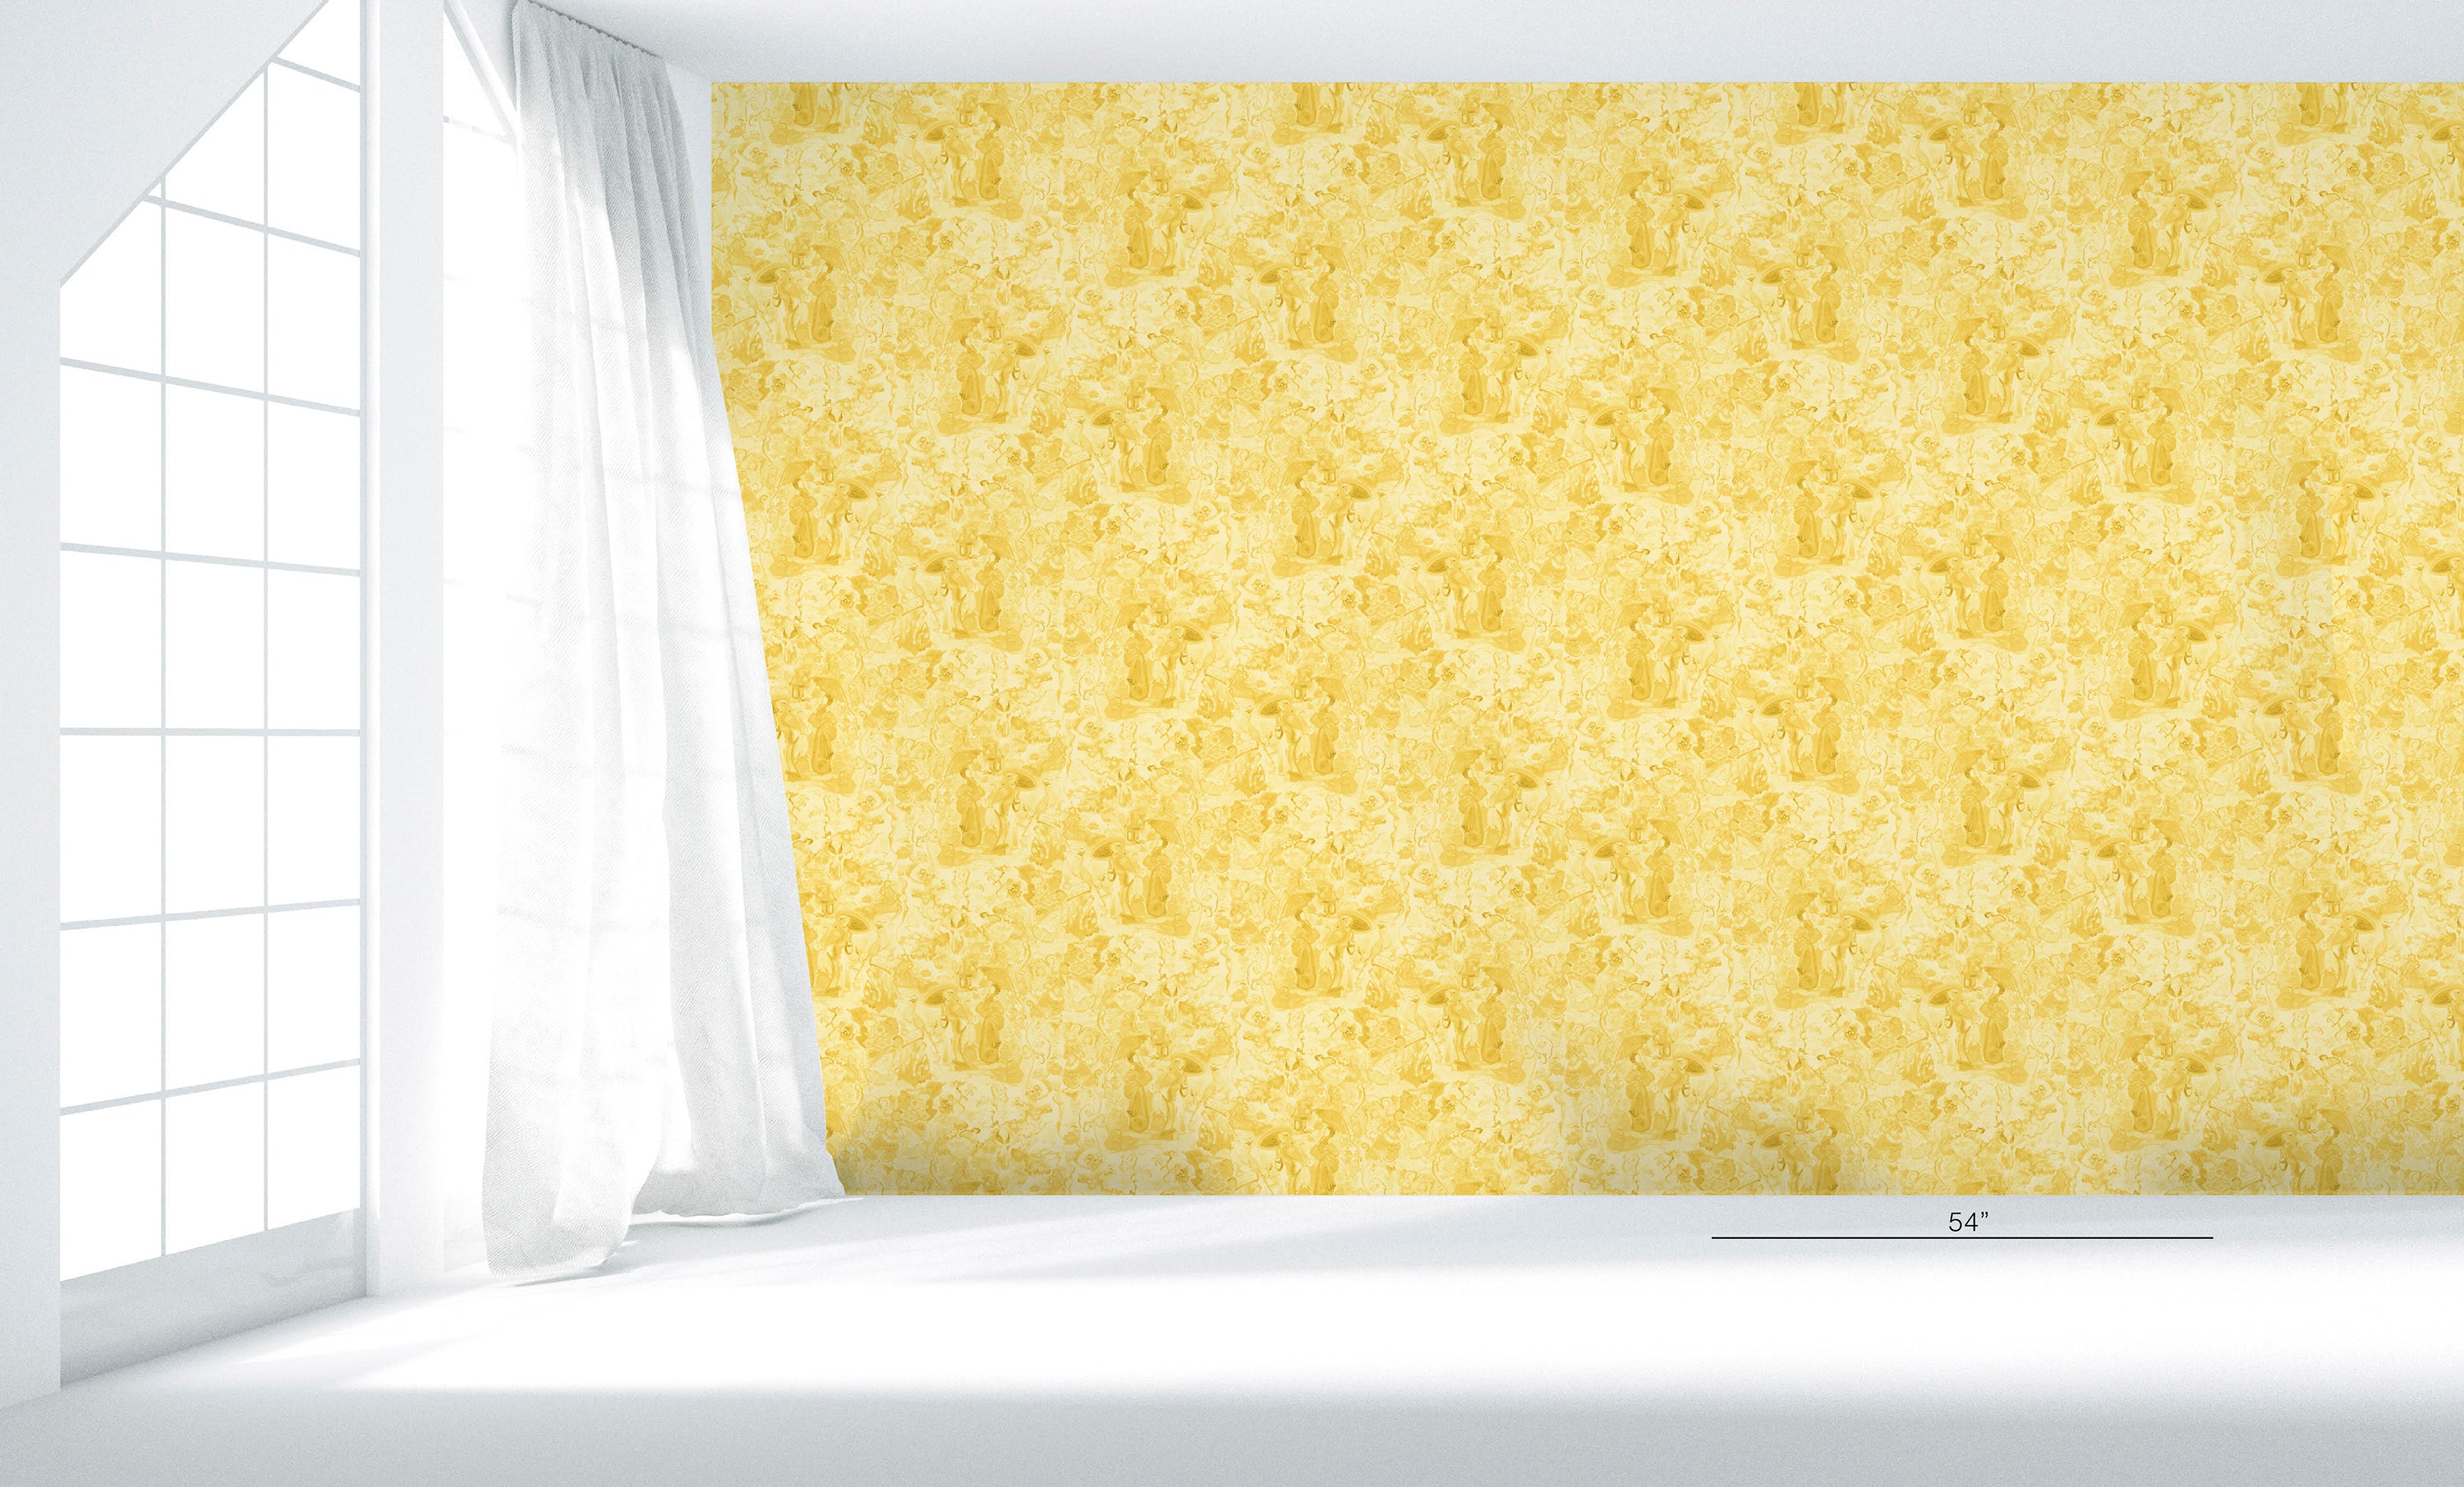 Monochrome Yellow on Metallic White Wallpaper